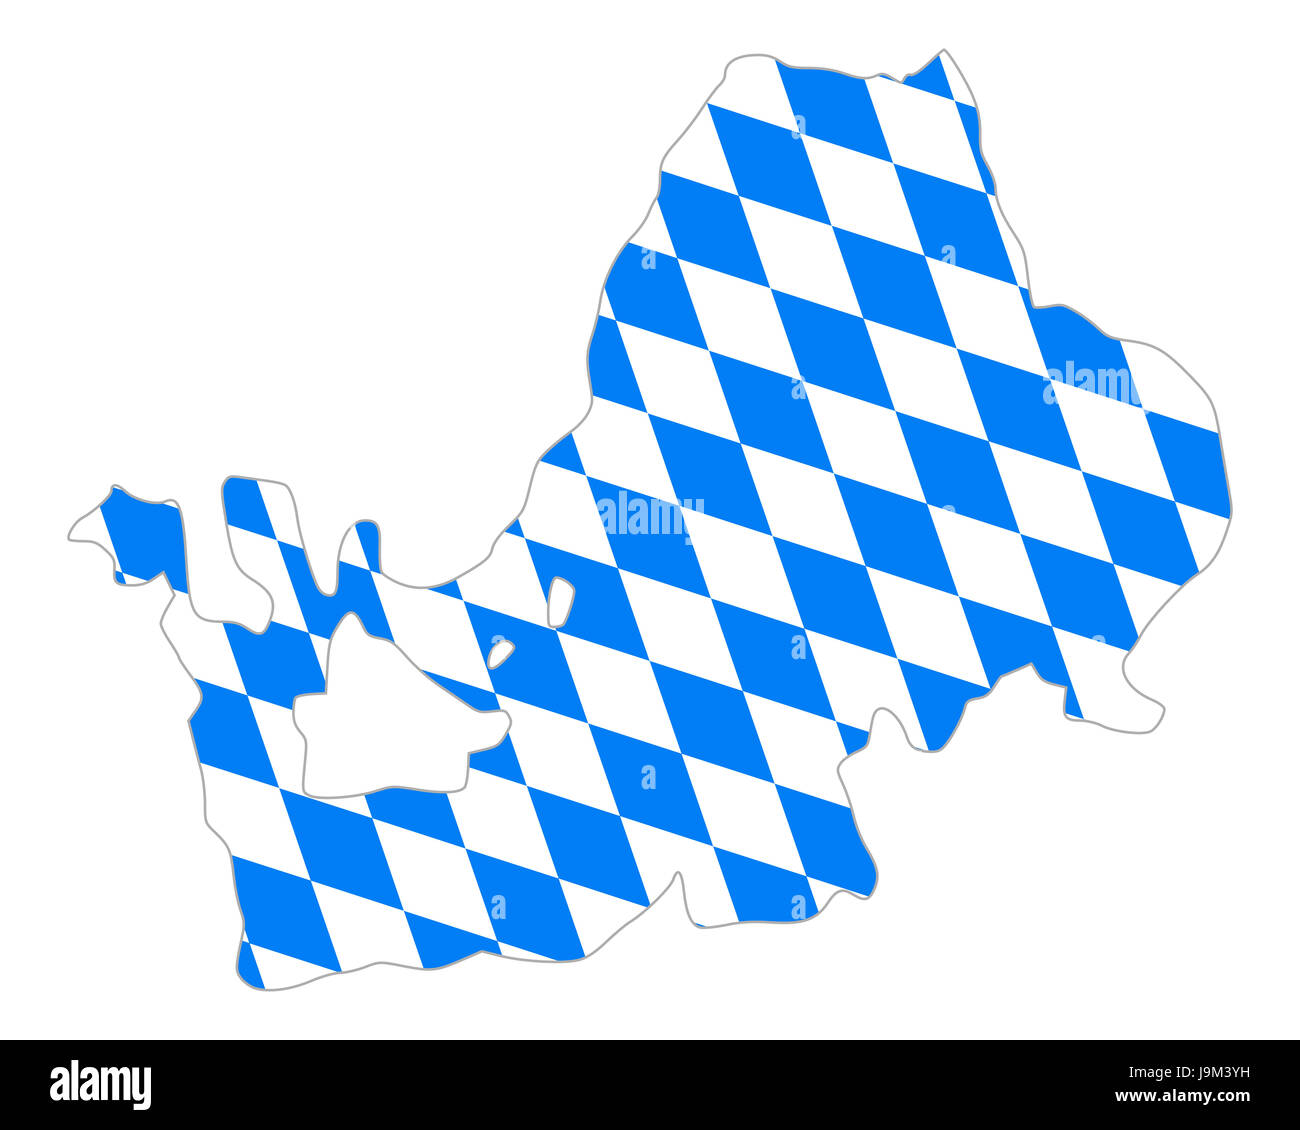 Bavaria flag -Fotos und -Bildmaterial in hoher Auflösung - Seite 3 - Alamy